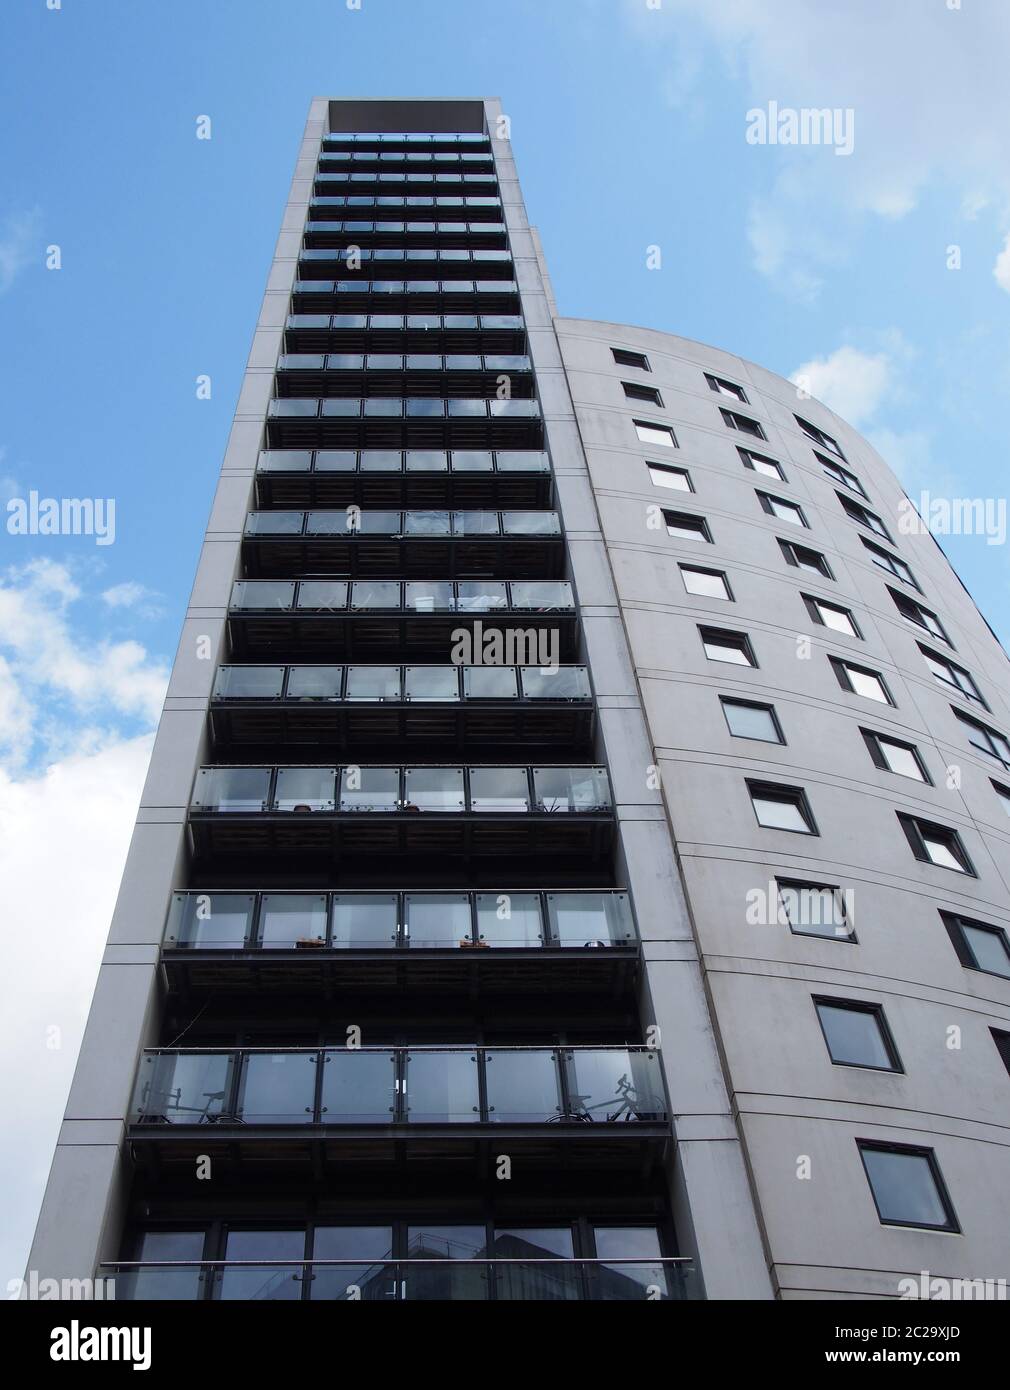 clarence casa un moderno appartamento alto 218 metri e un edificio al dettaglio nella zona del porto di leeds contro un cielo blu nuvoloso Foto Stock